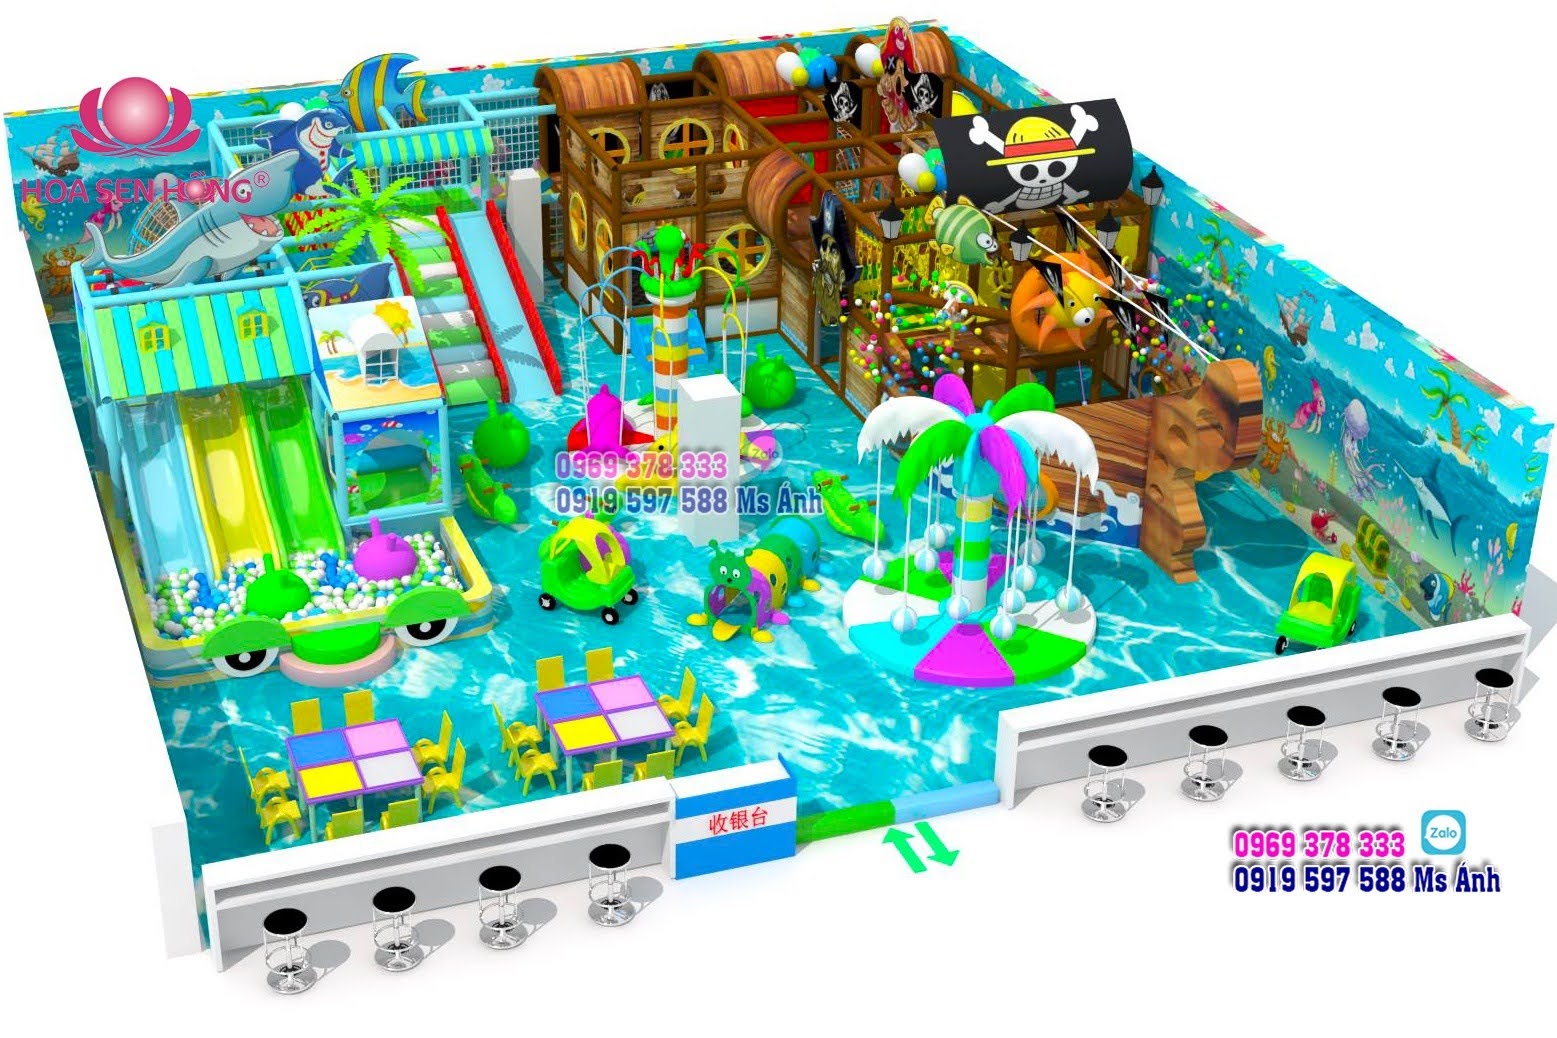 Thiết kế khu vui chơi trẻ em diện tích 12x15m.
Chủ đề khu vui chơi: Đại dương xanh